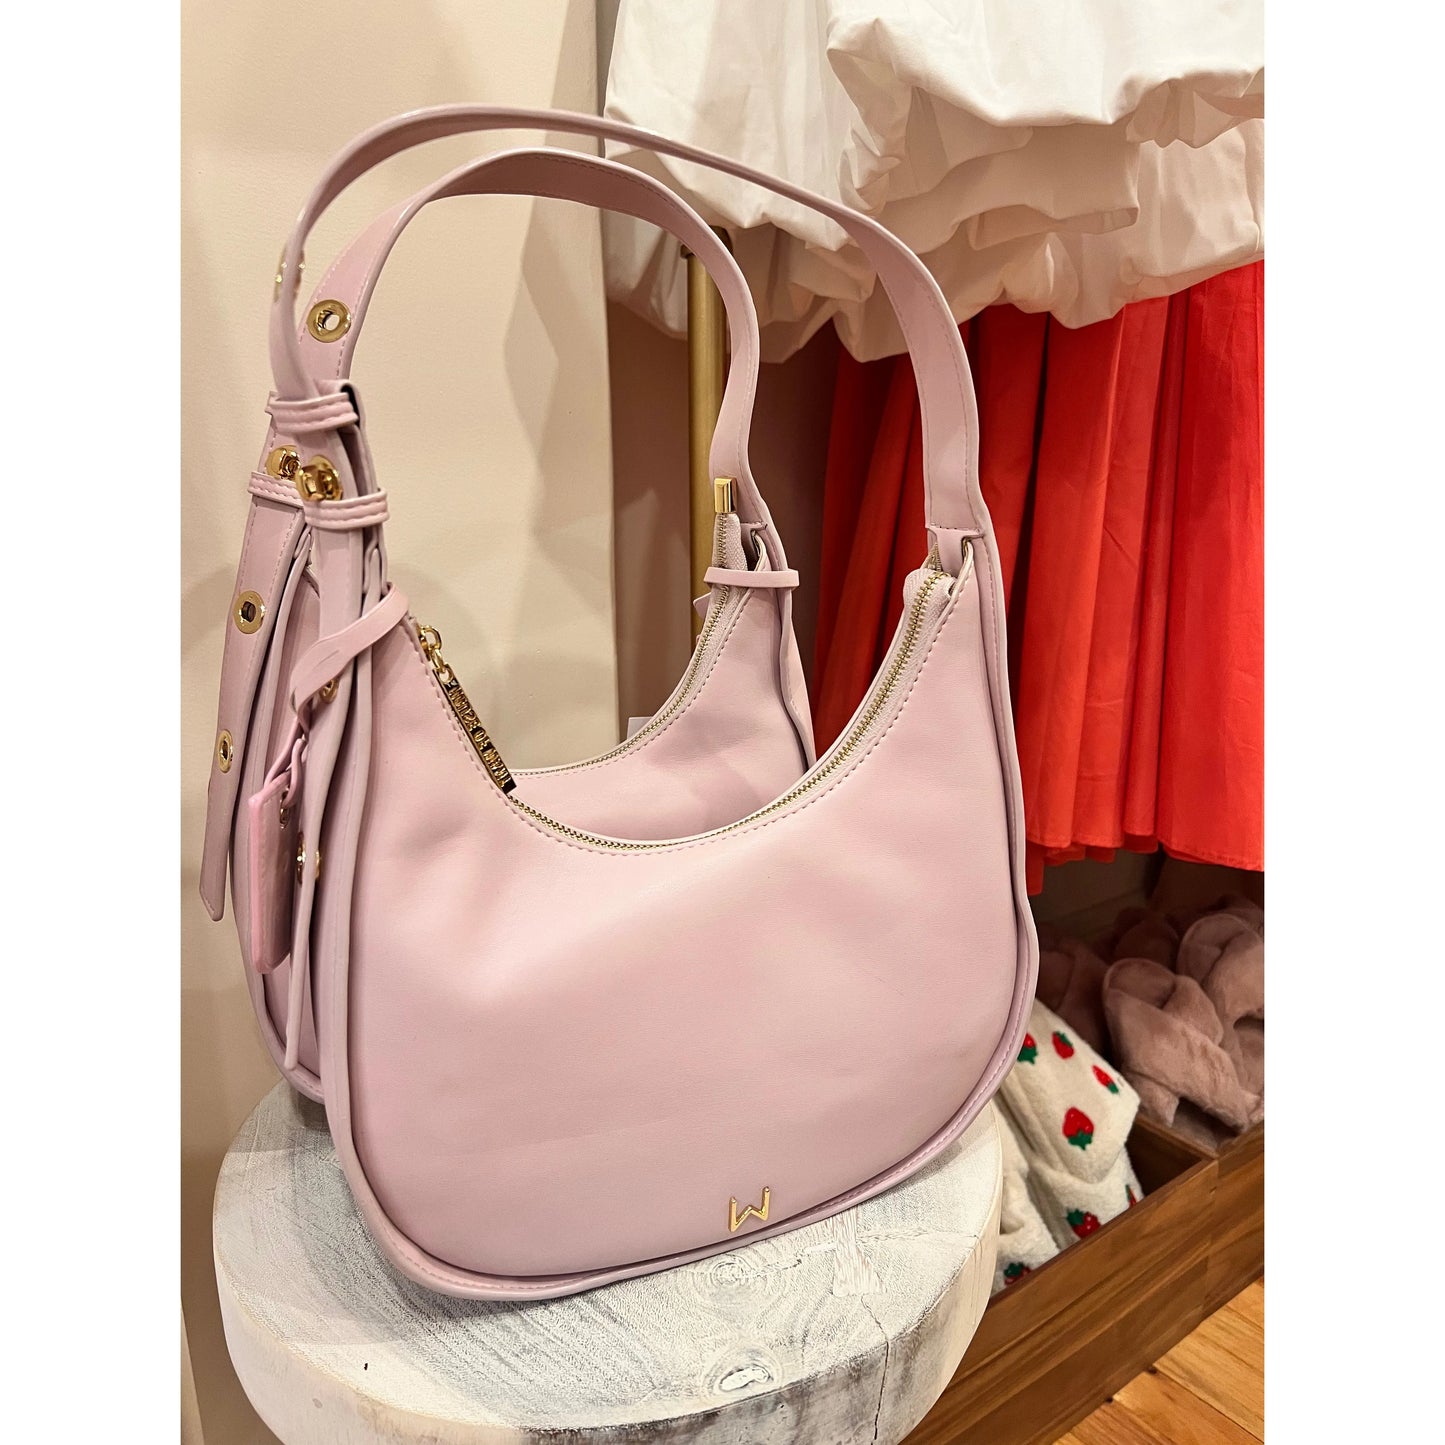 Cherry Blossom Shoulder Bag